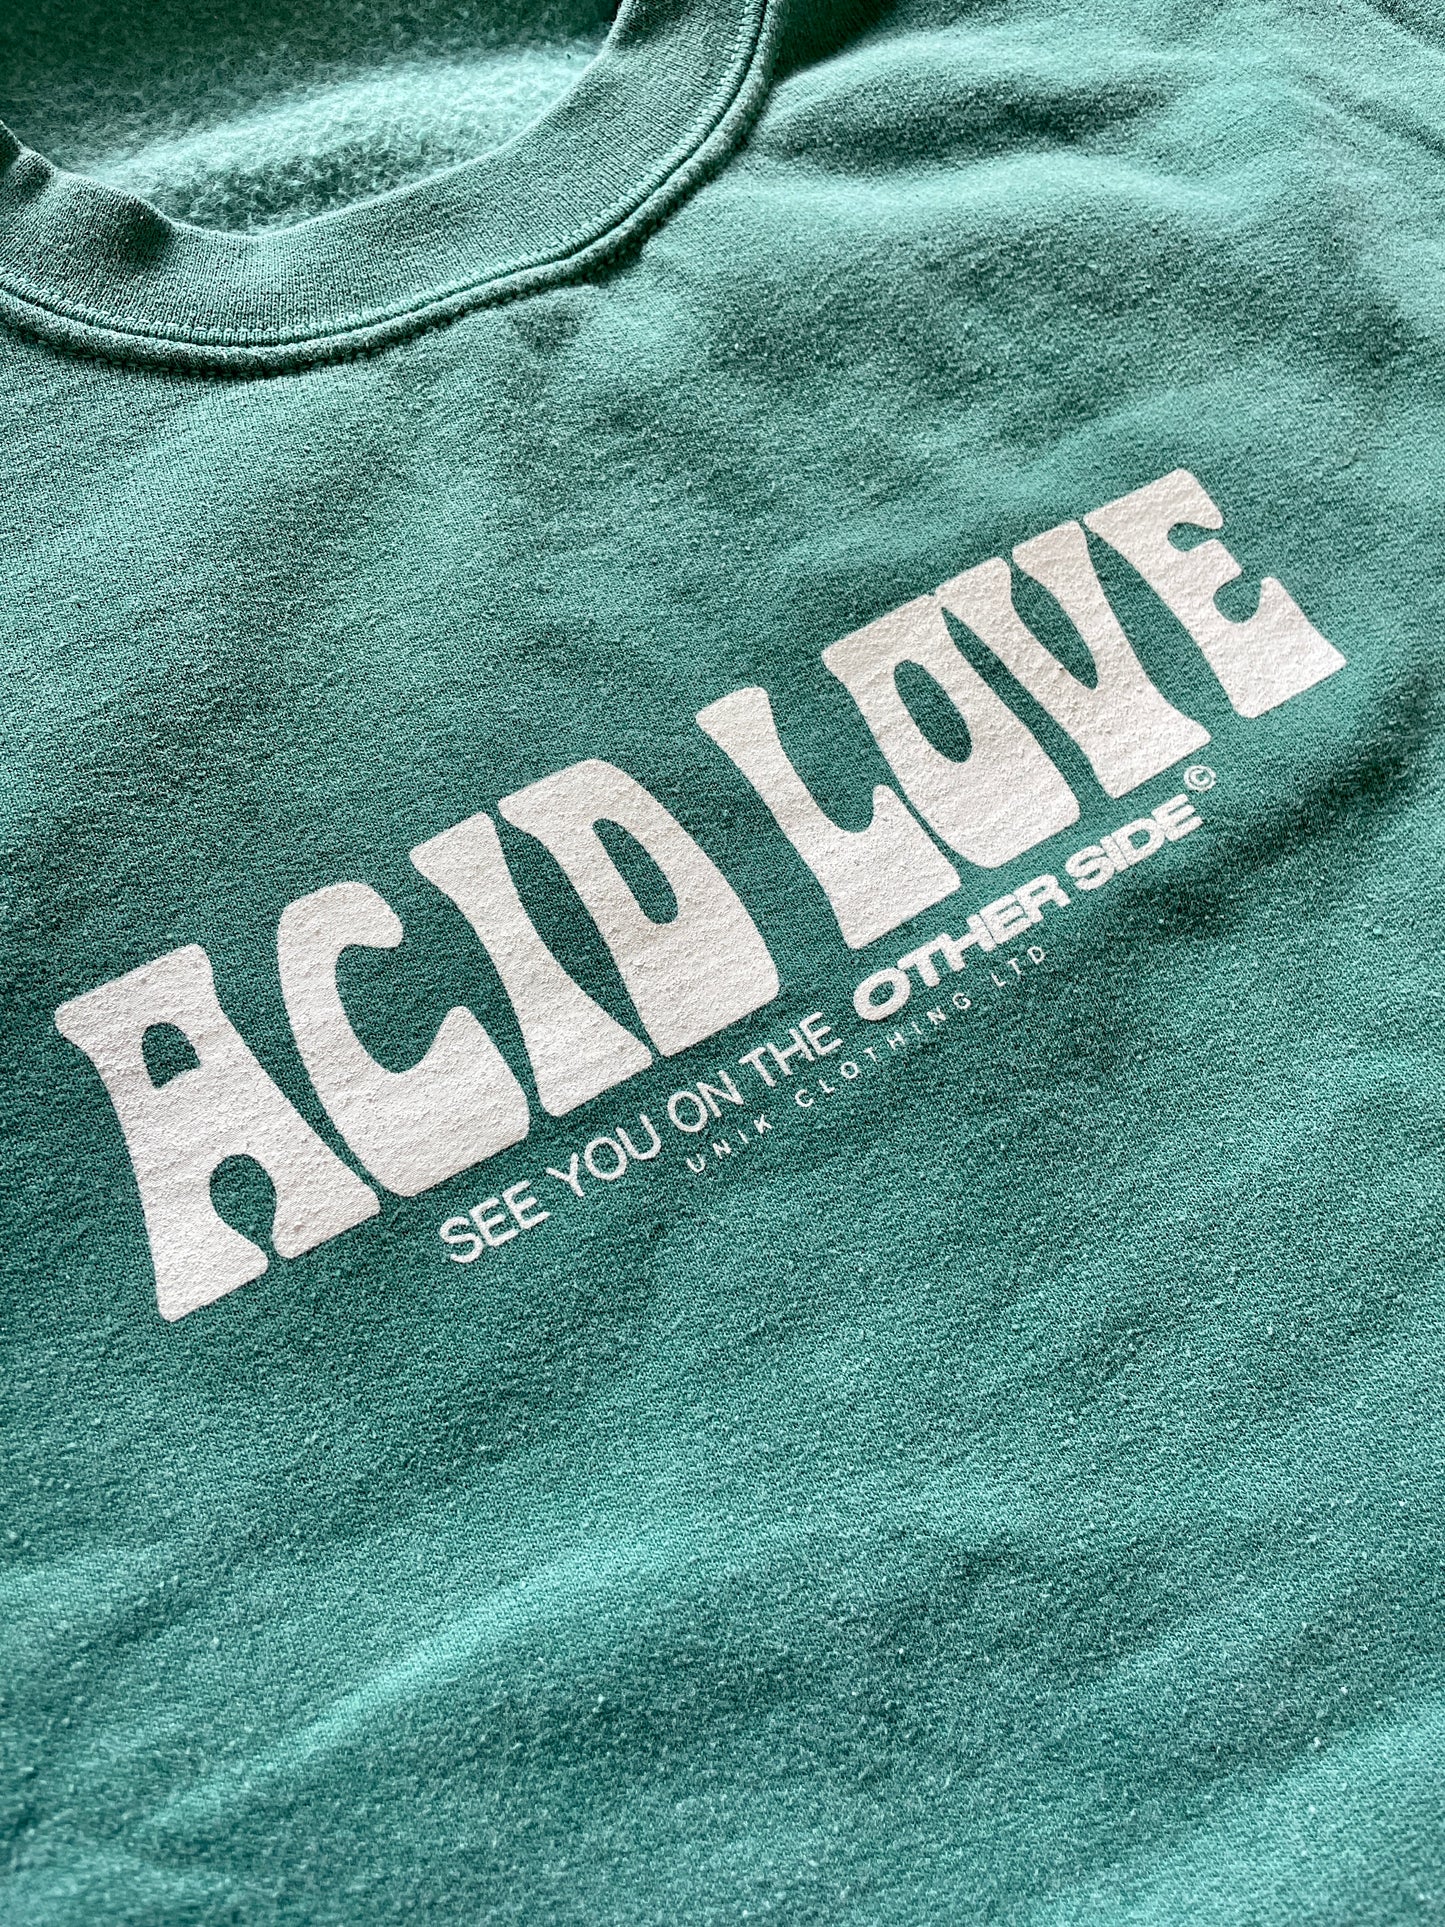 Acid Love 0.06 'Other Side' Sweatshirt - Vintage Washed Teal